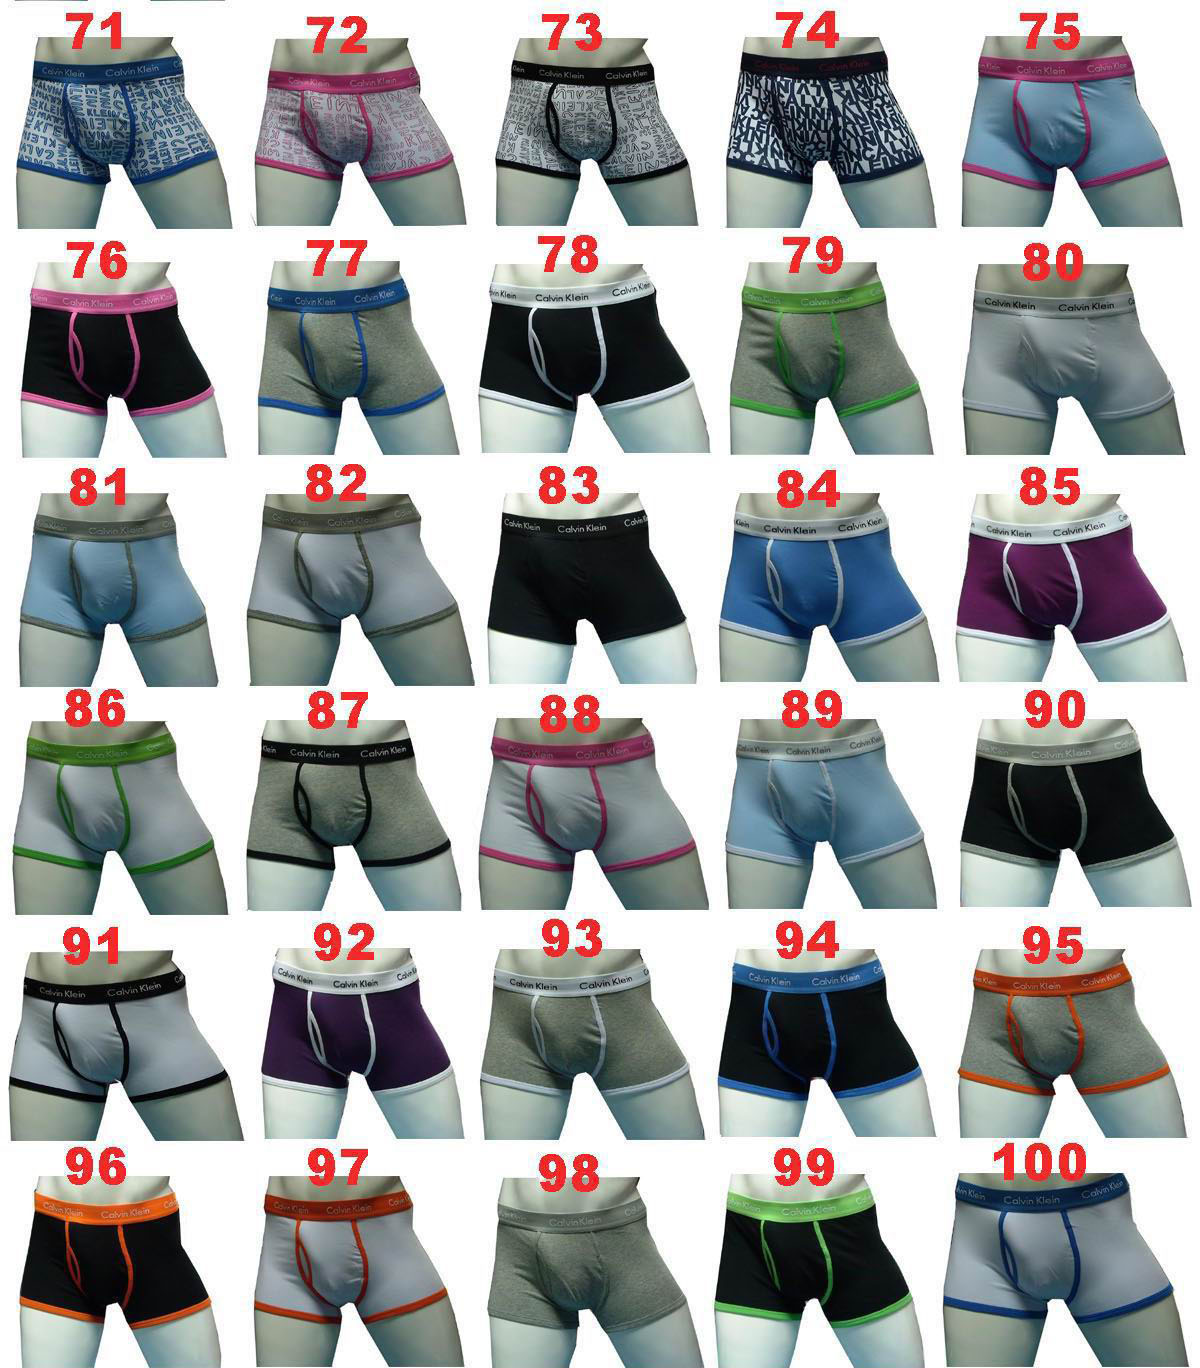 Hot sell 365 briefs ck underwear